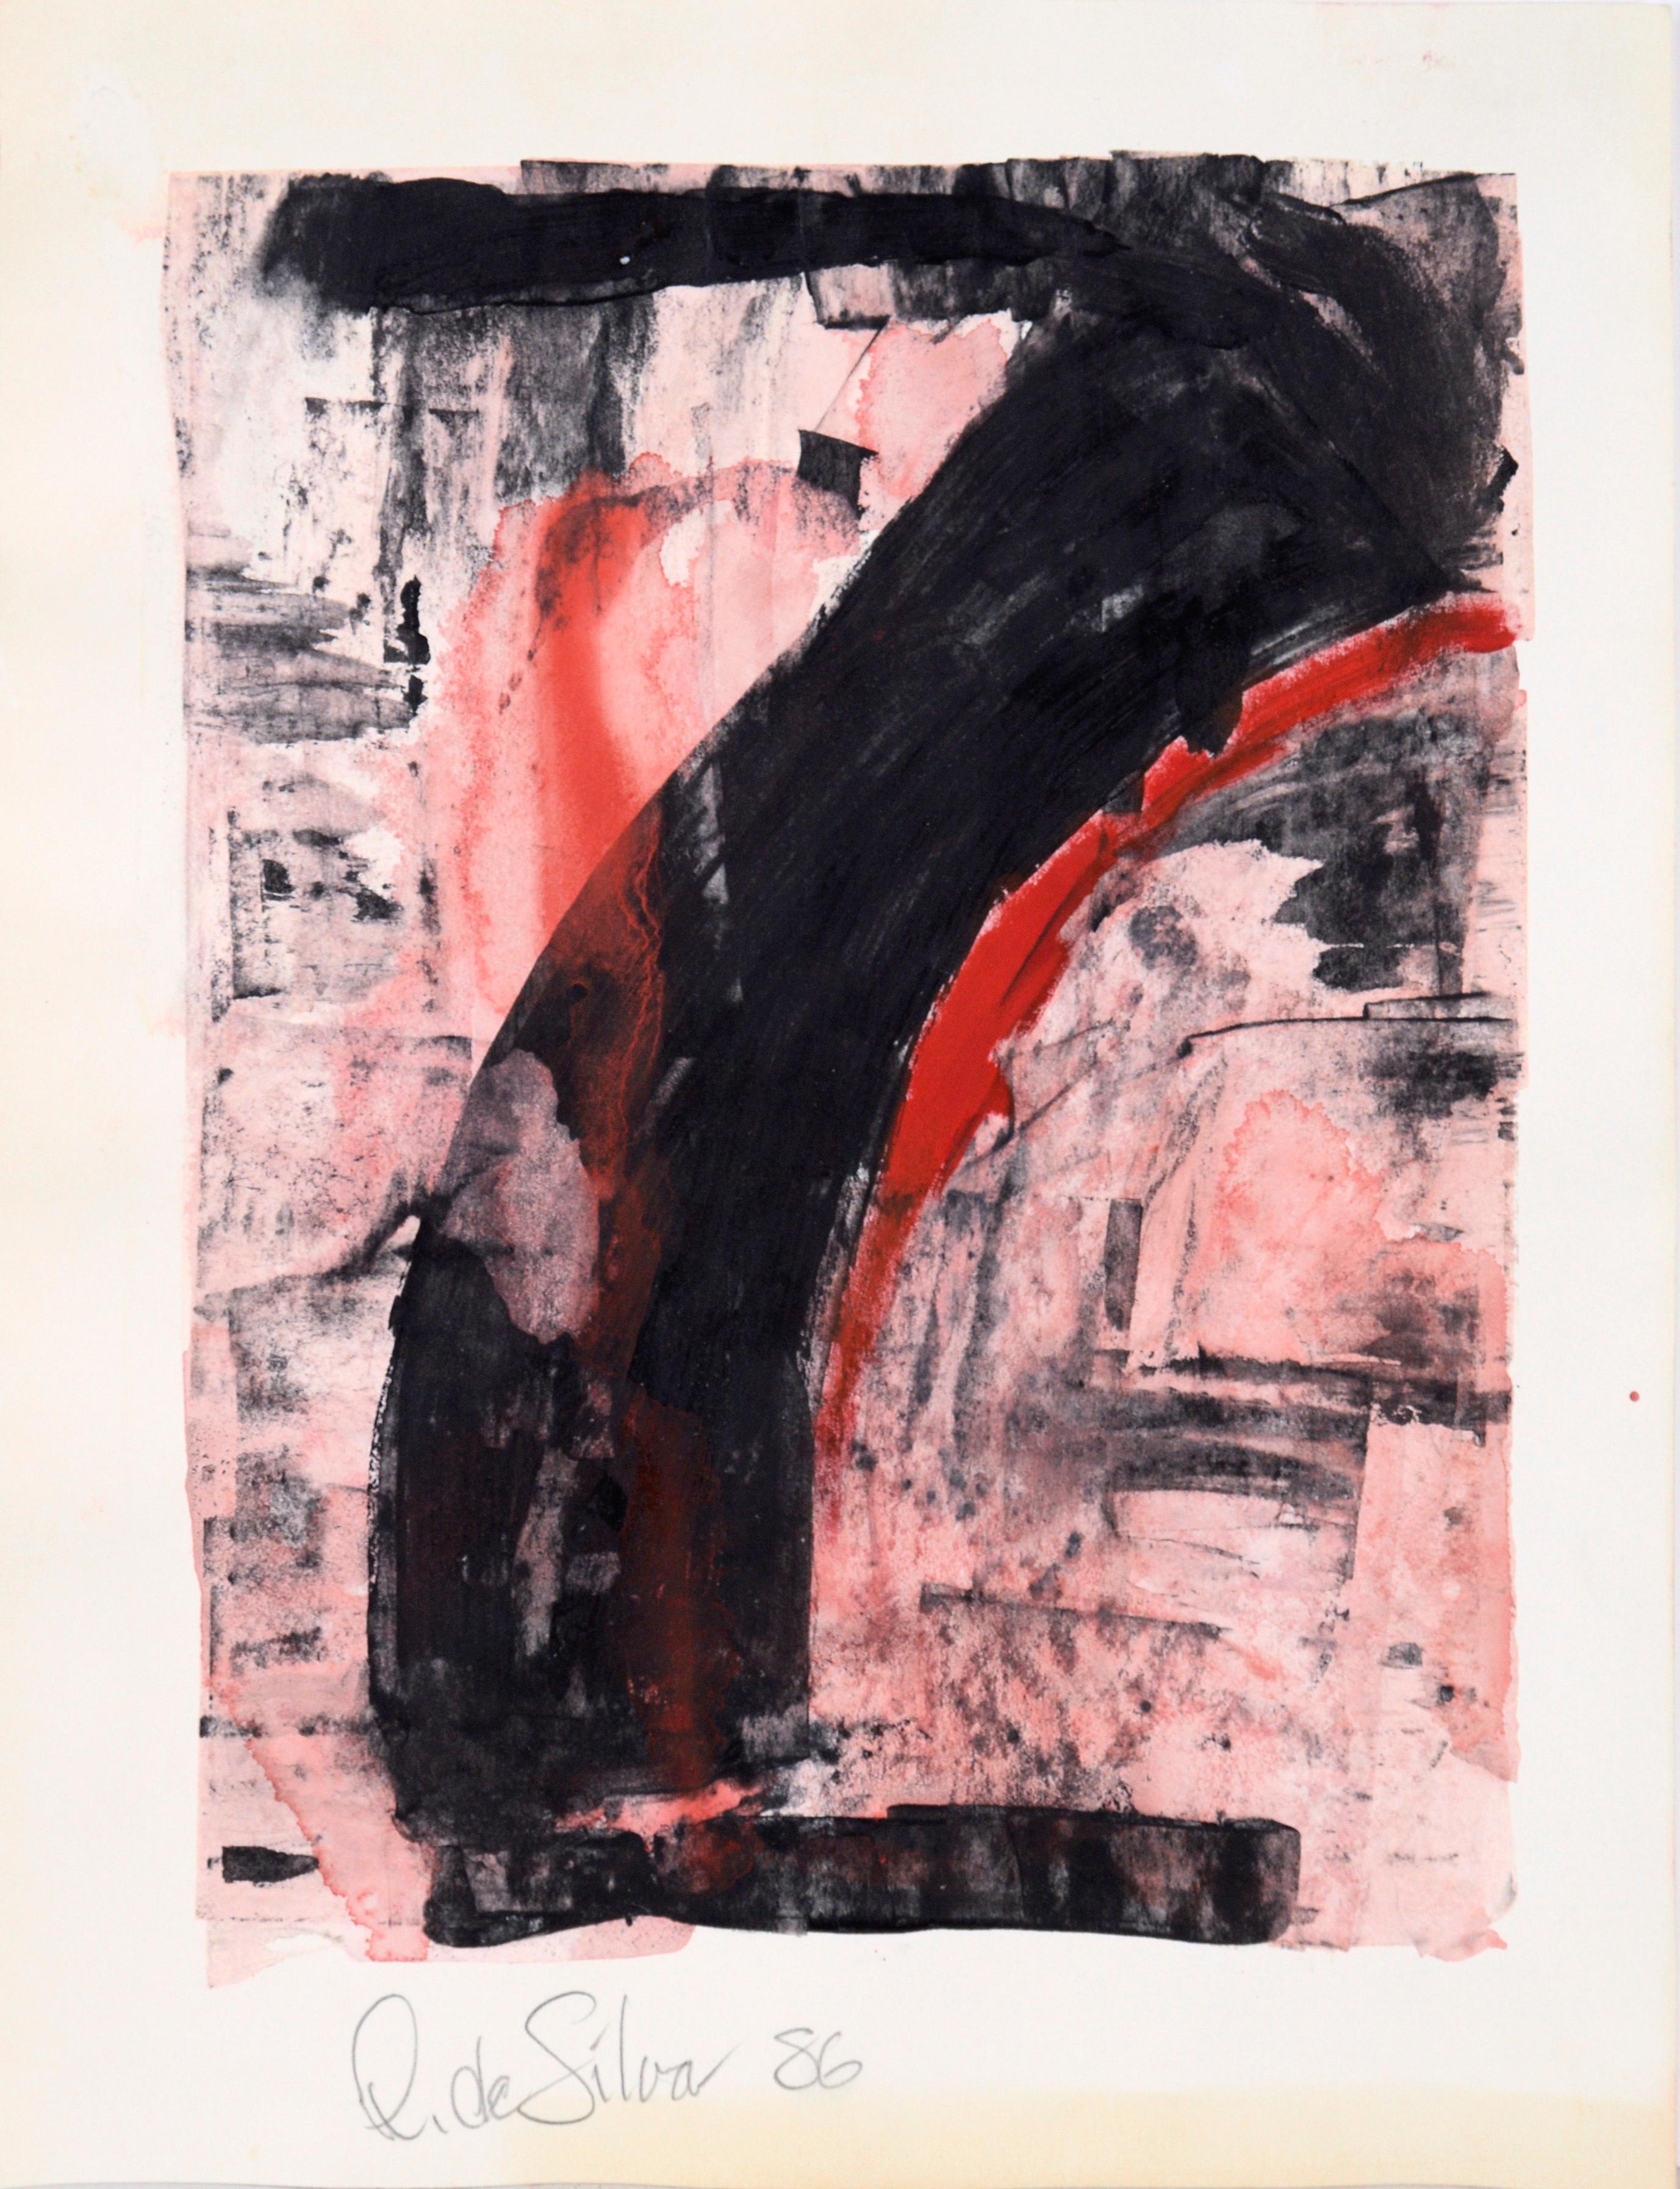 Abstrakt-expressionistische Komposition aus Acryl und Pastell auf Papier